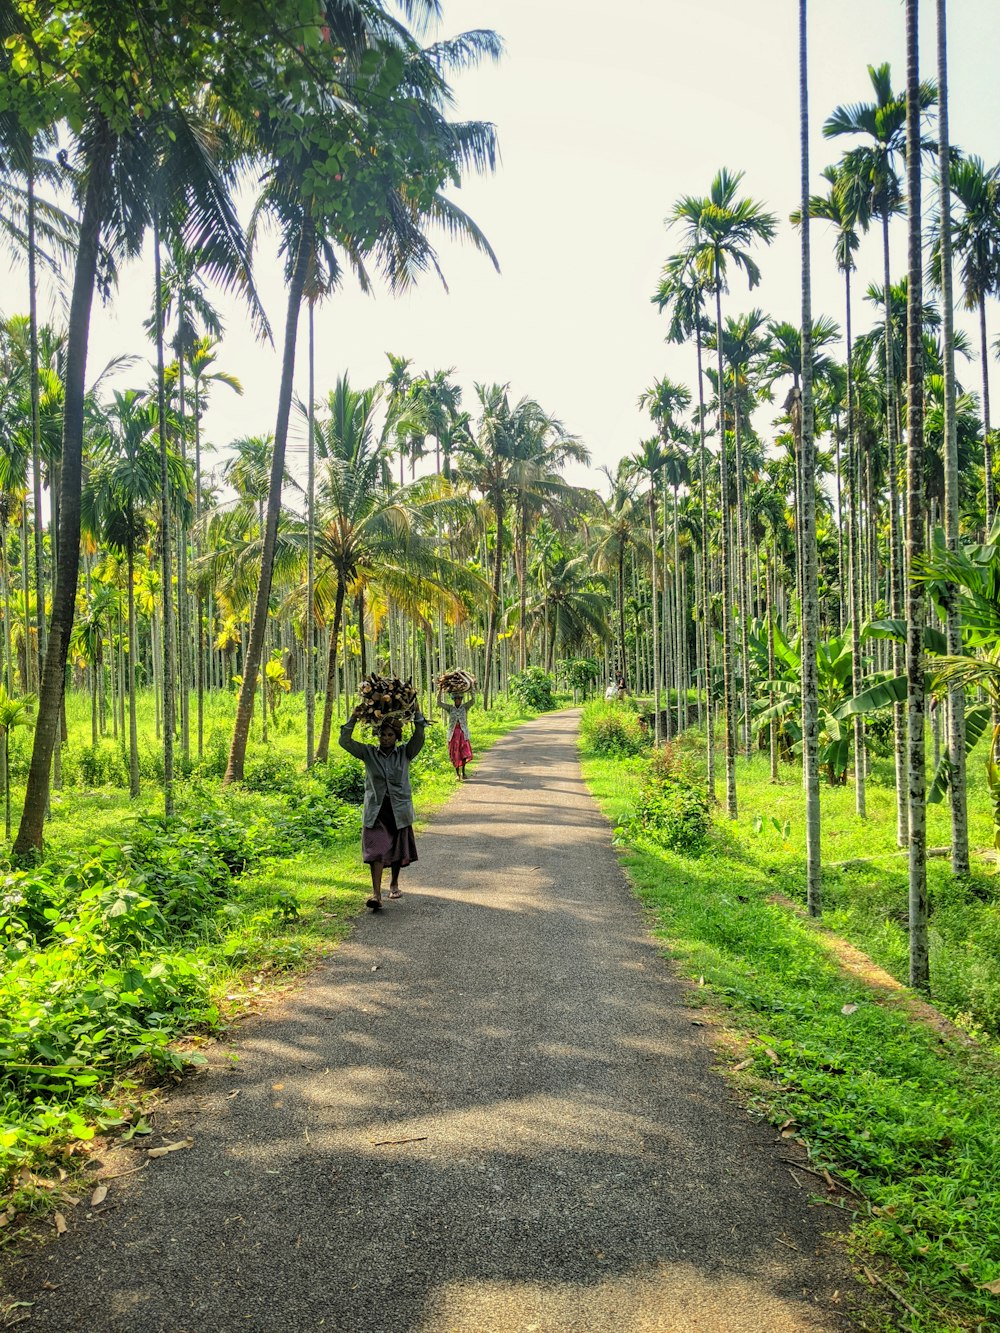 donna in giacca nera che cammina sulla strada asfaltata grigia tra le palme verdi durante il giorno